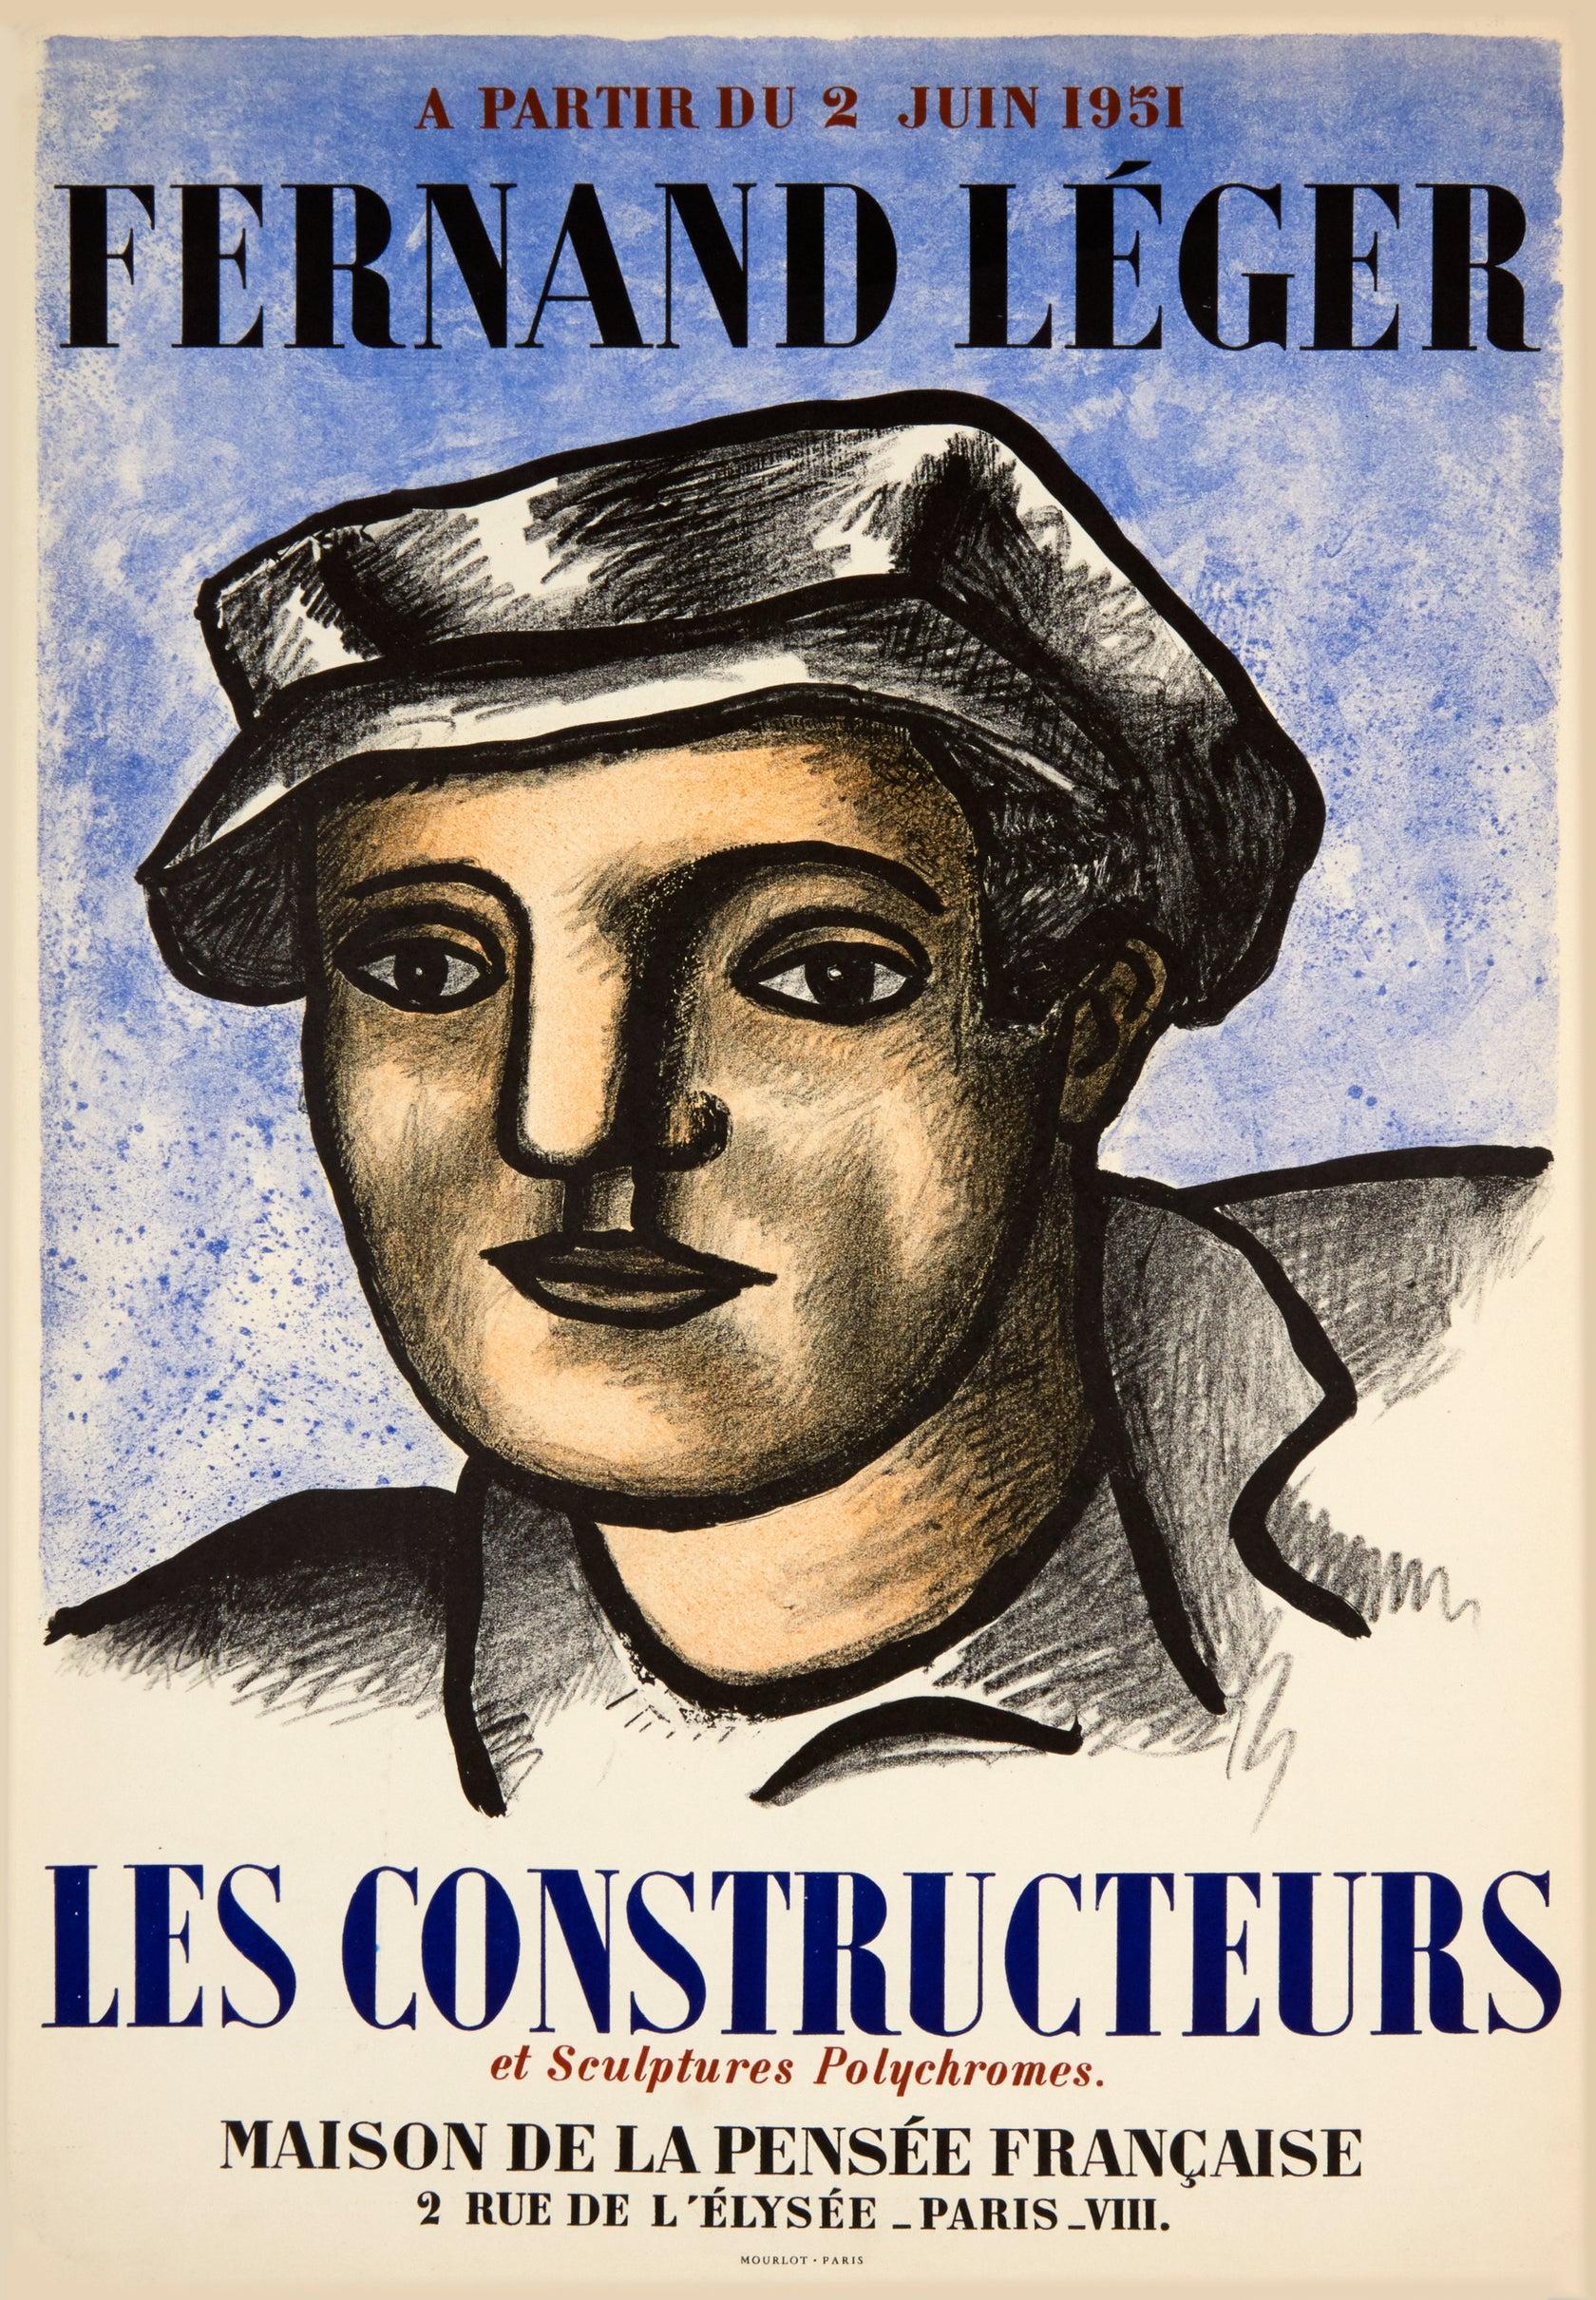 Les Constructeurs by Fernand Leger - Print by Fernand Léger